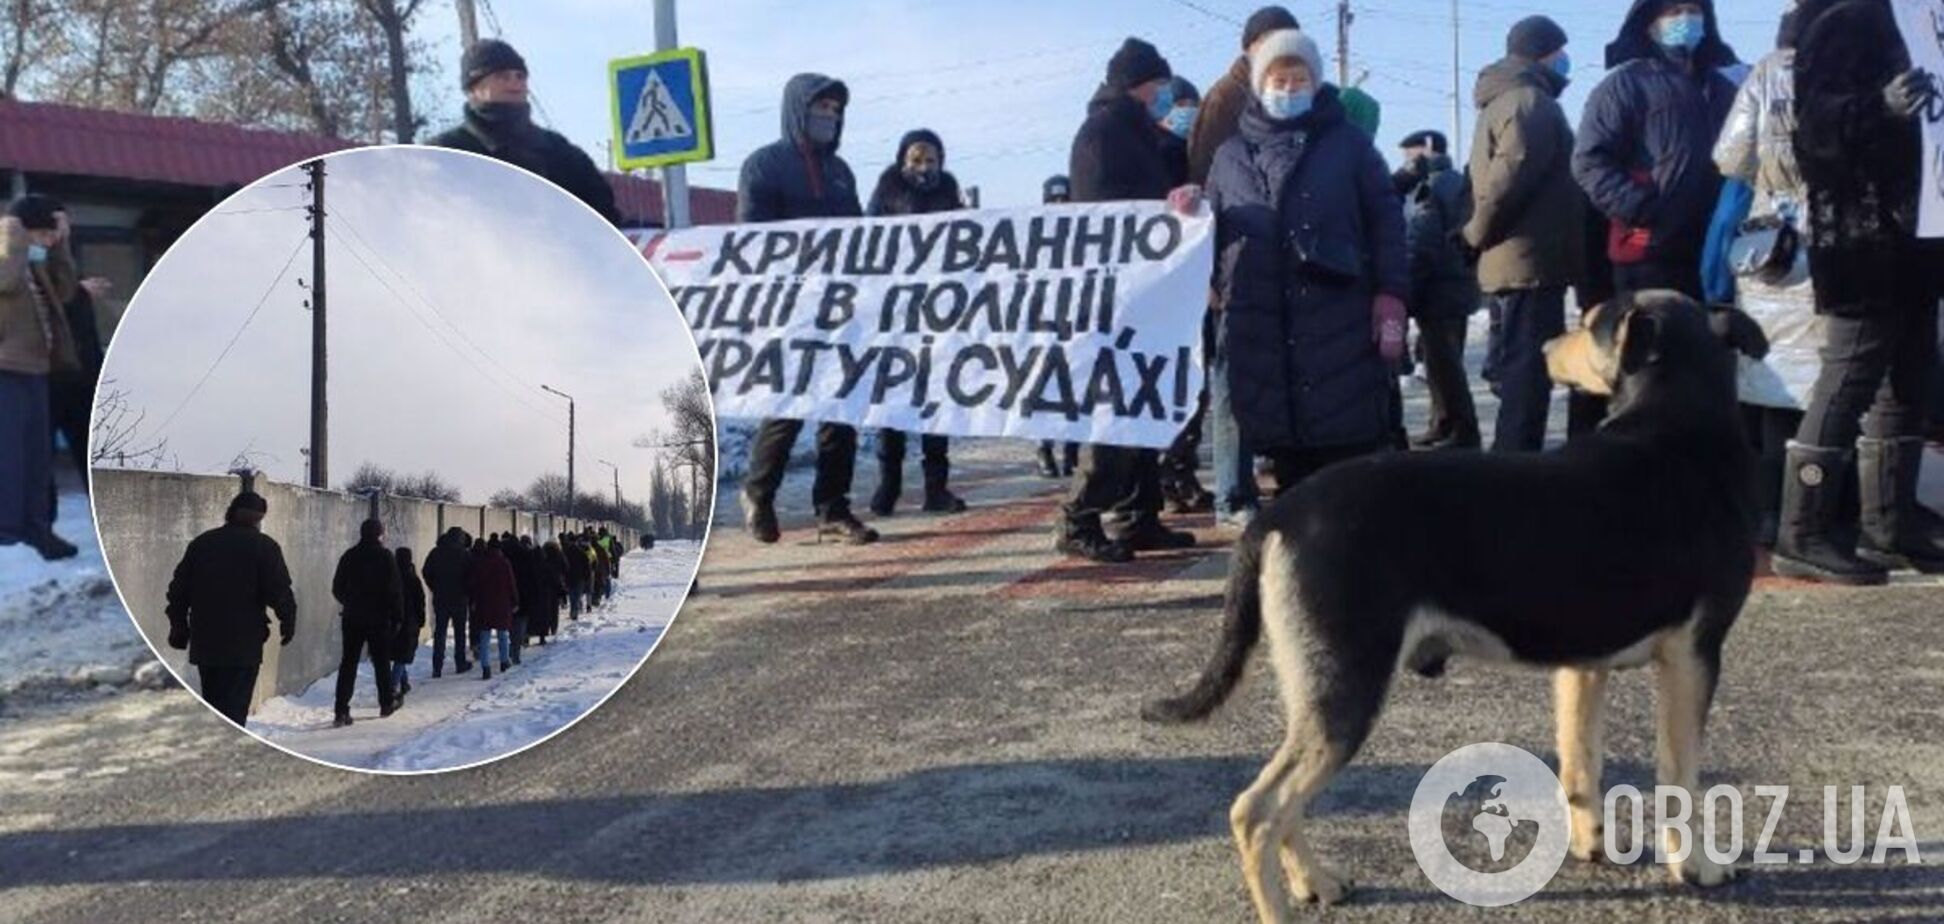 Трассу Киев-Харьков снова перекрыли протестующие, произошли стычки. Видео